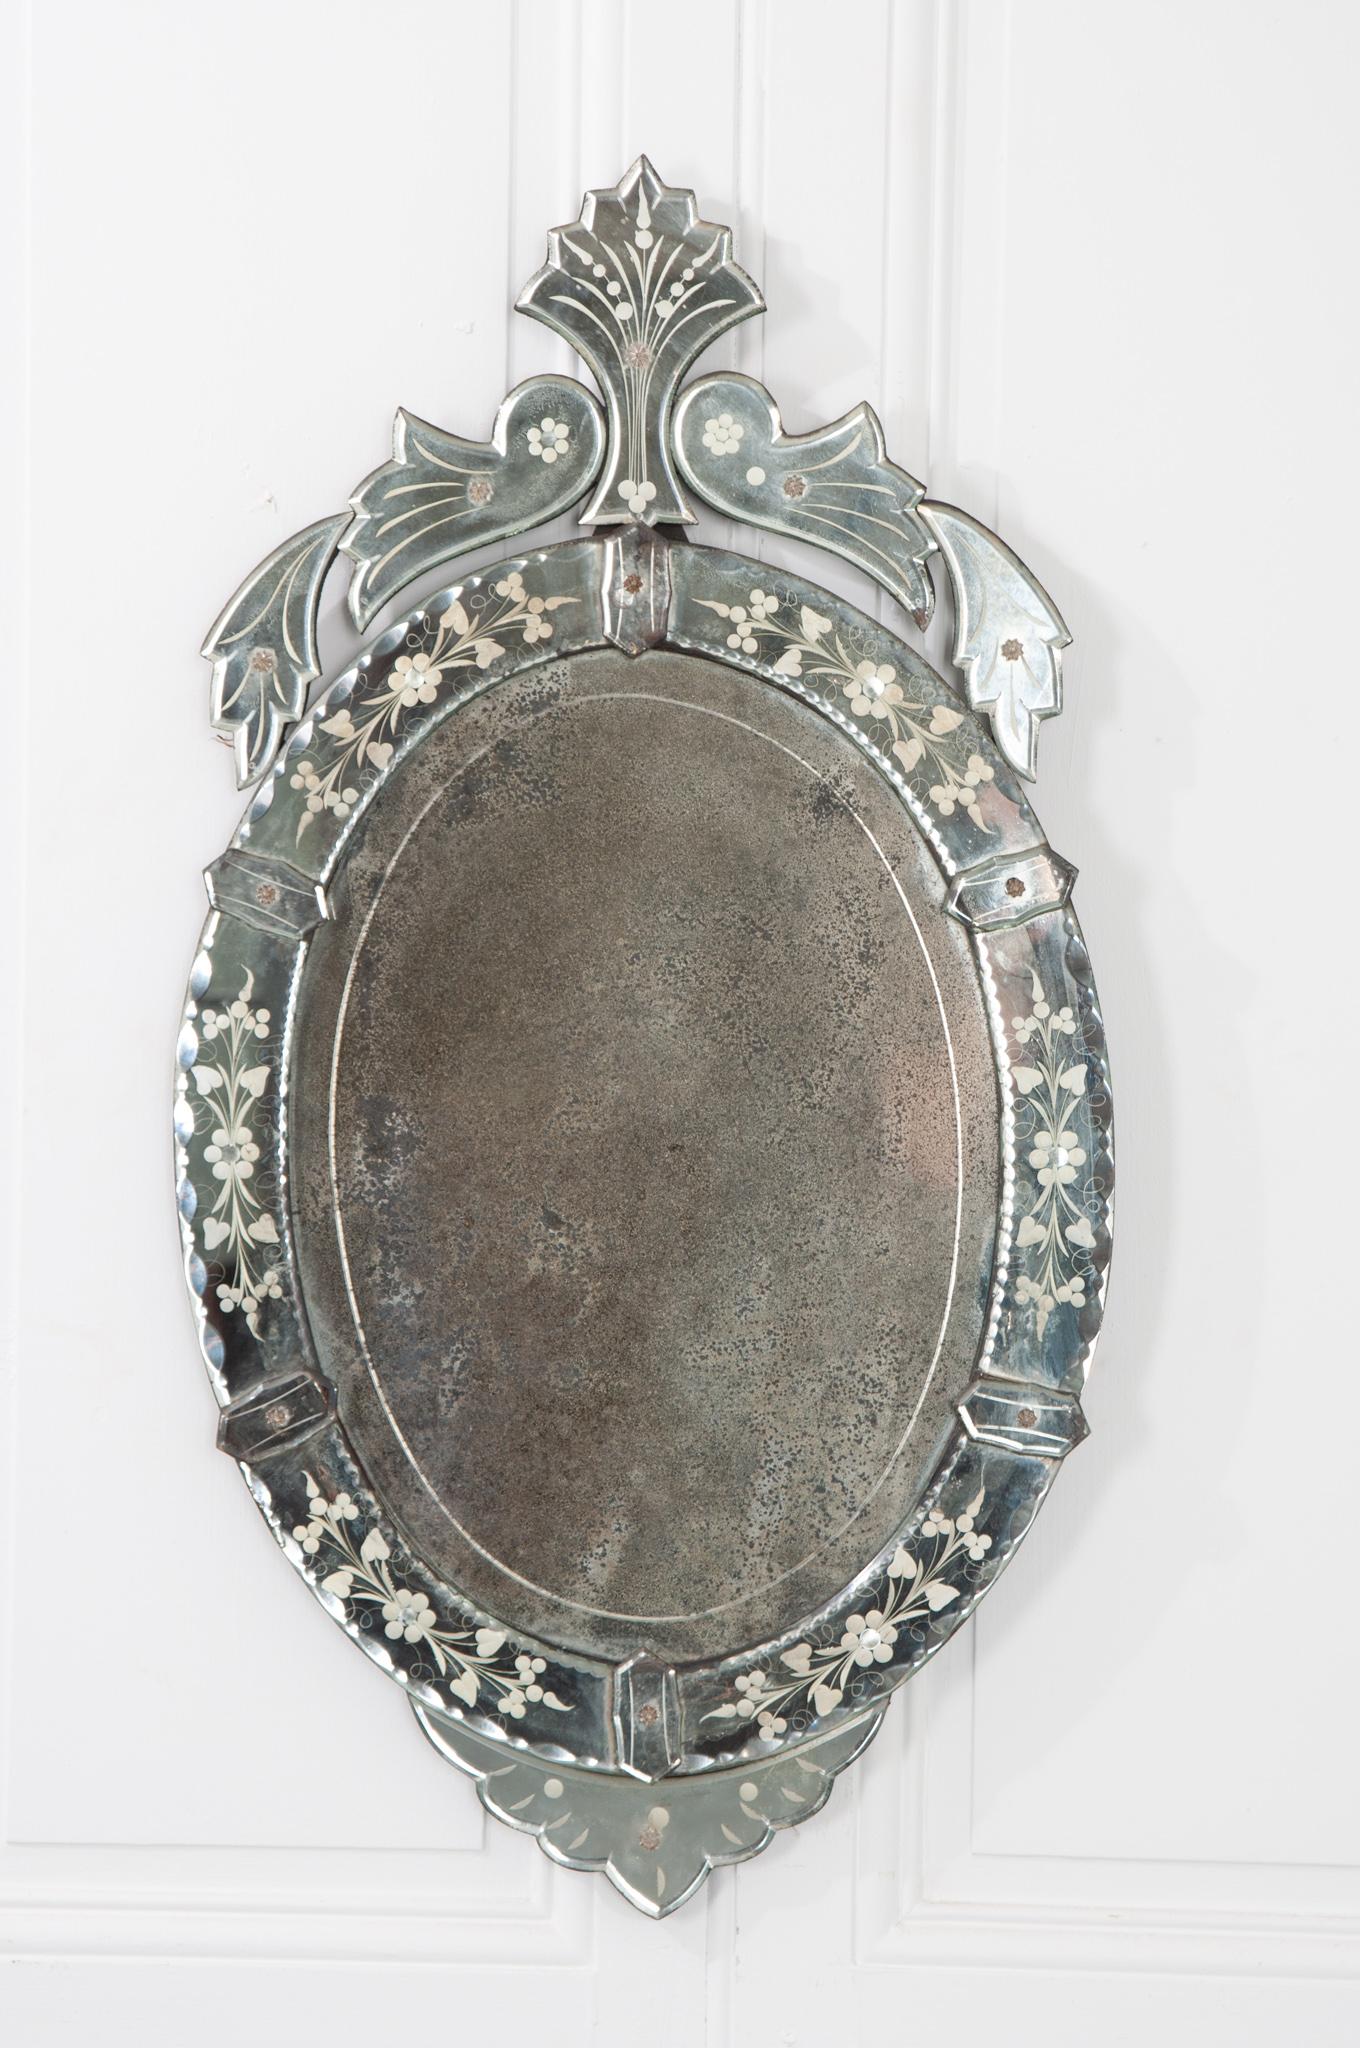 Dies ist ein schöner ovaler venezianischer Spiegel aus Italien. Die Originalplatte ist stark stockfleckig und gealtert. Es würde jedem Raum eine gewisse Eleganz verleihen. Sehen Sie sich unbedingt die detaillierten Bilder an.
  